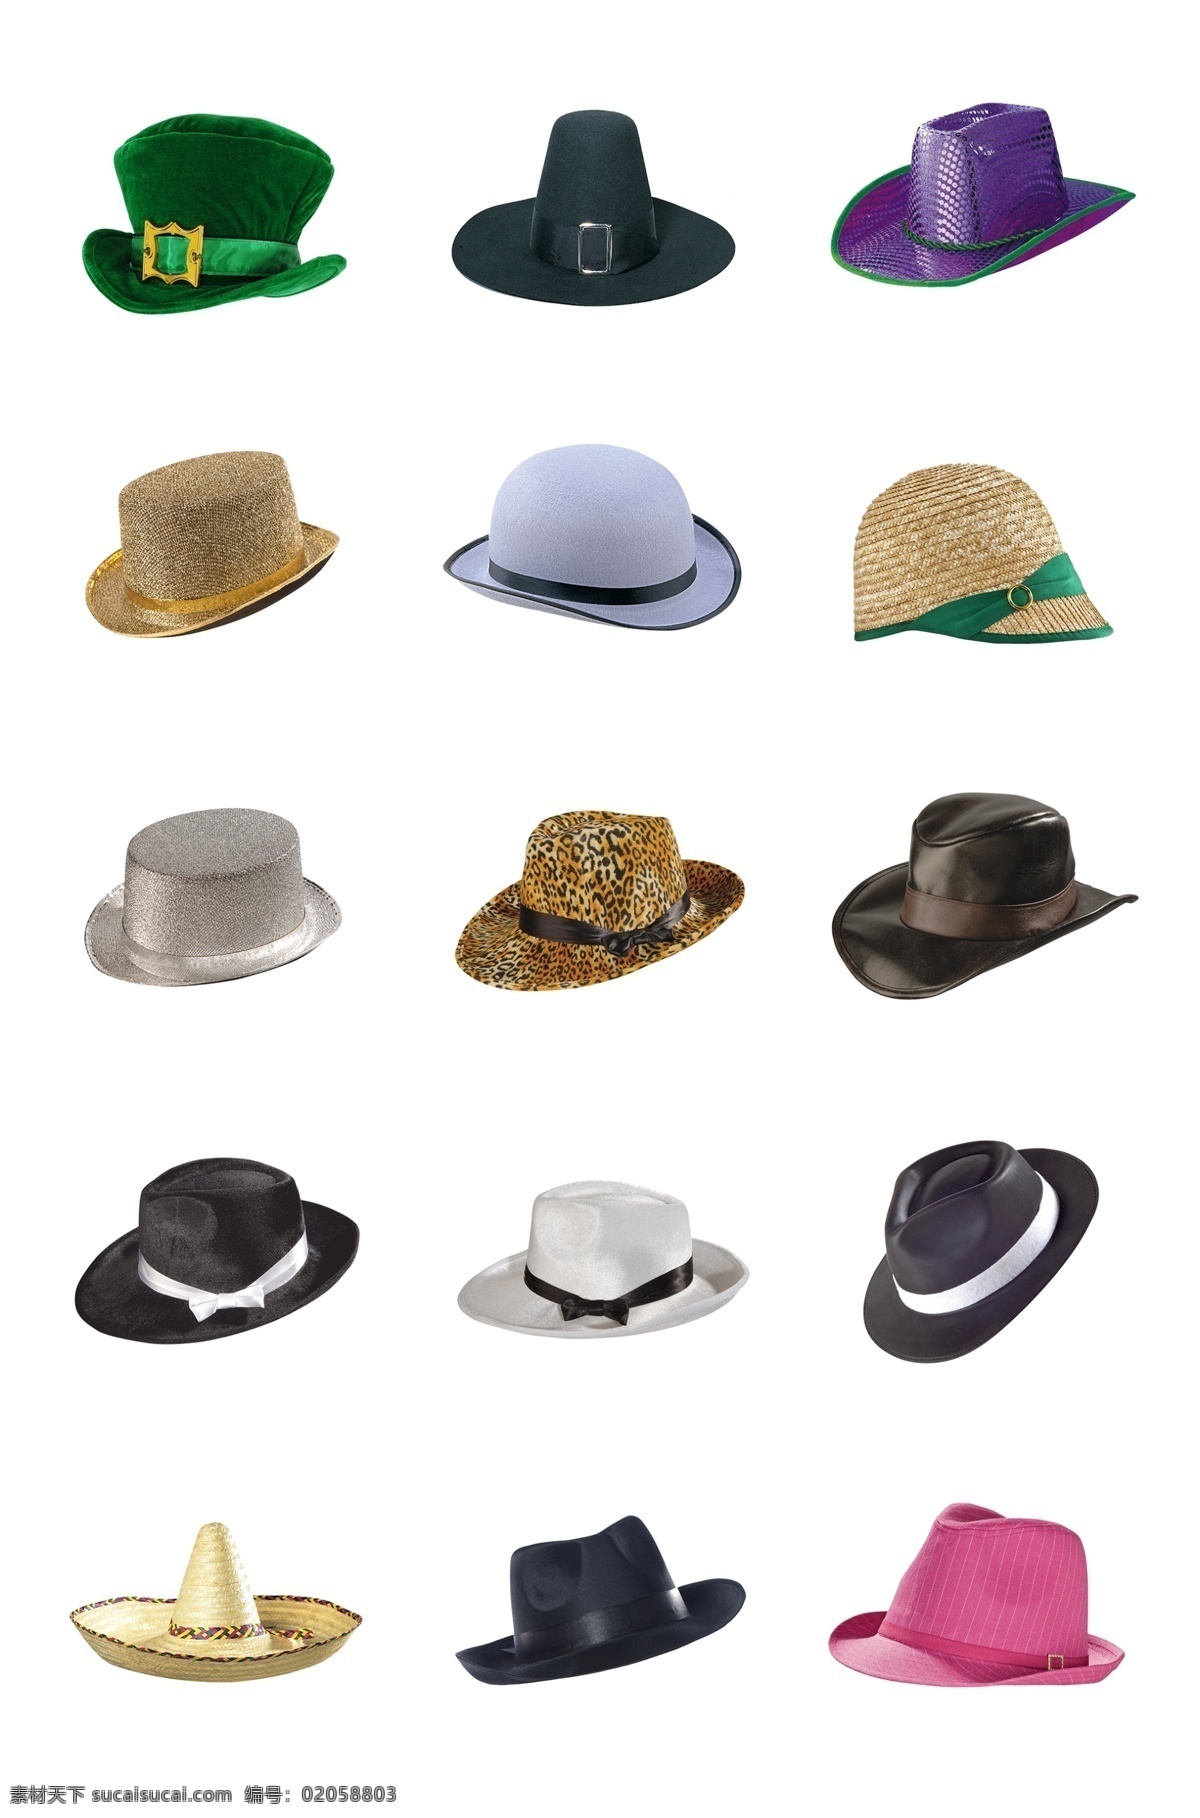 免 抠 帽子 产品实物素材 生活用品素材 服饰类素材 帽子素材 多种样式帽子 女性帽子素材 服装类素材 常见帽子素材 素雅帽子素材 分层 背景素材